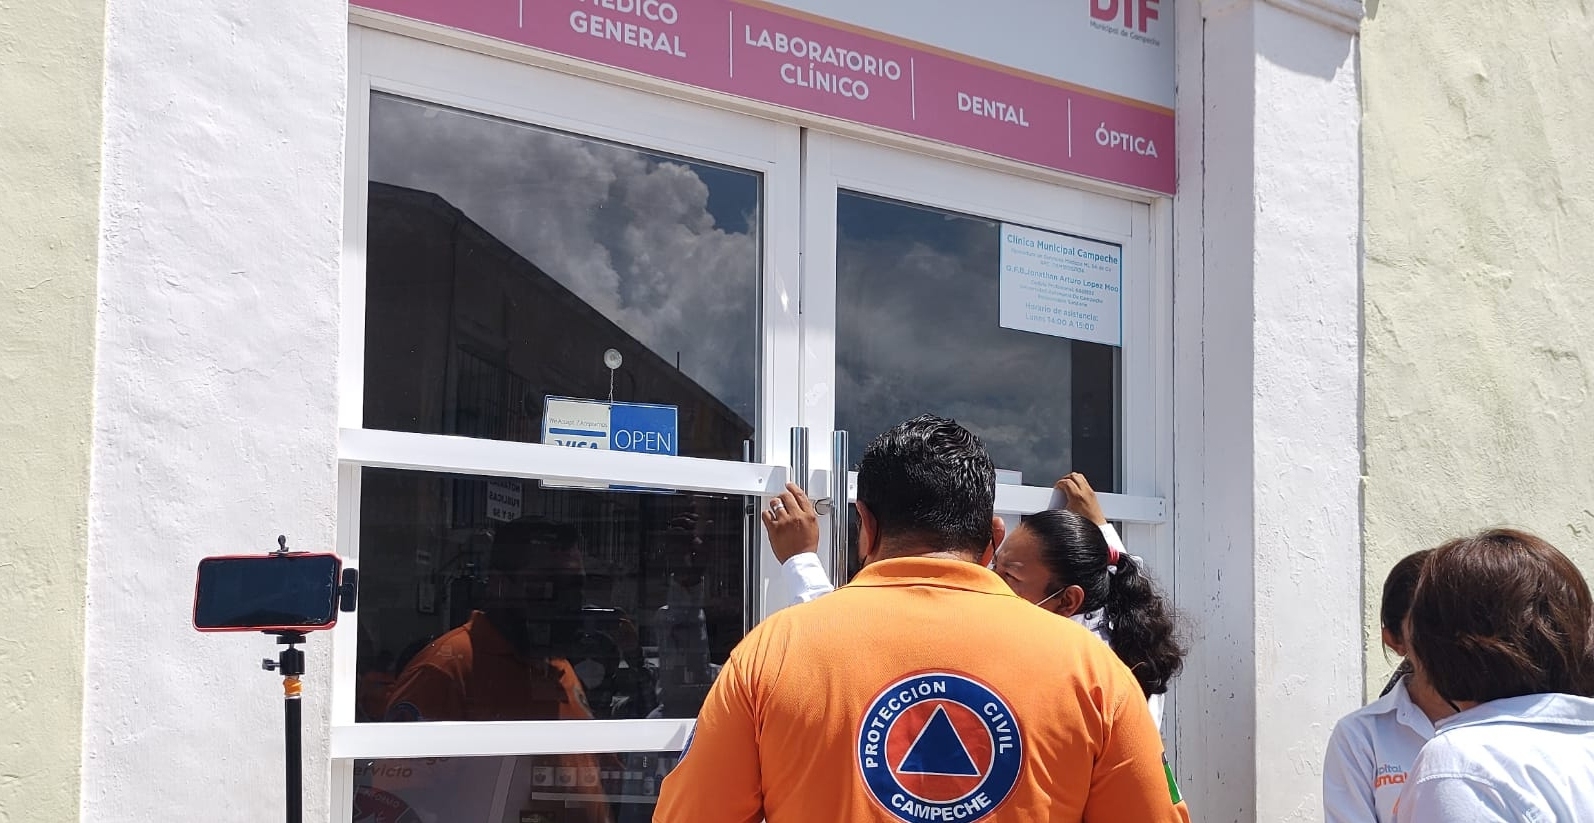 Juez emite amparo para la reapertura de la farmacia de Eliseo Fernández, exalcalde de Campeche